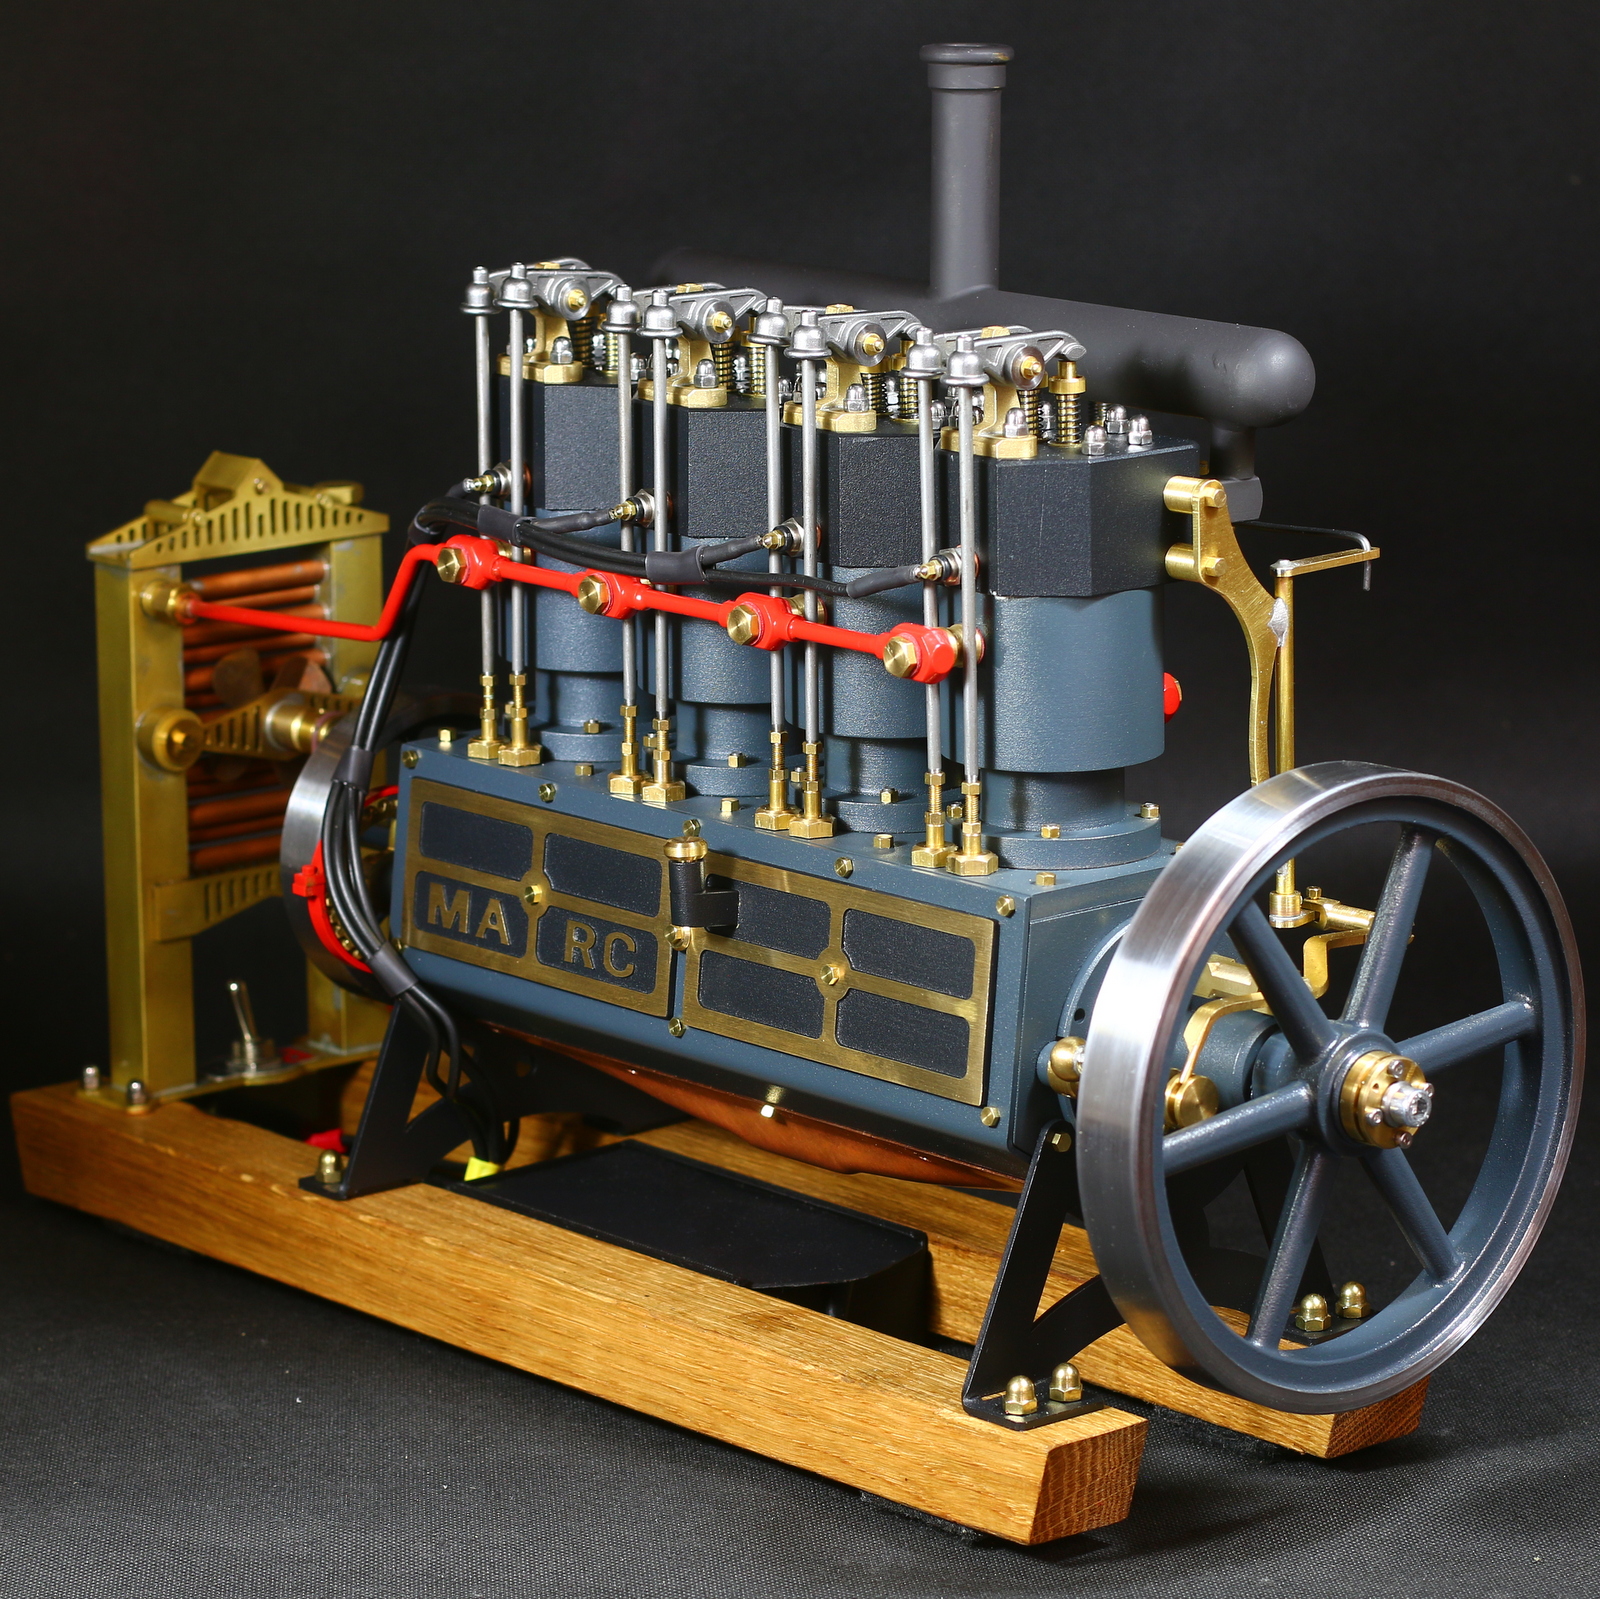 Dieser Vierzylinder Verbrennungsmotor wird als Bausatz geliefert